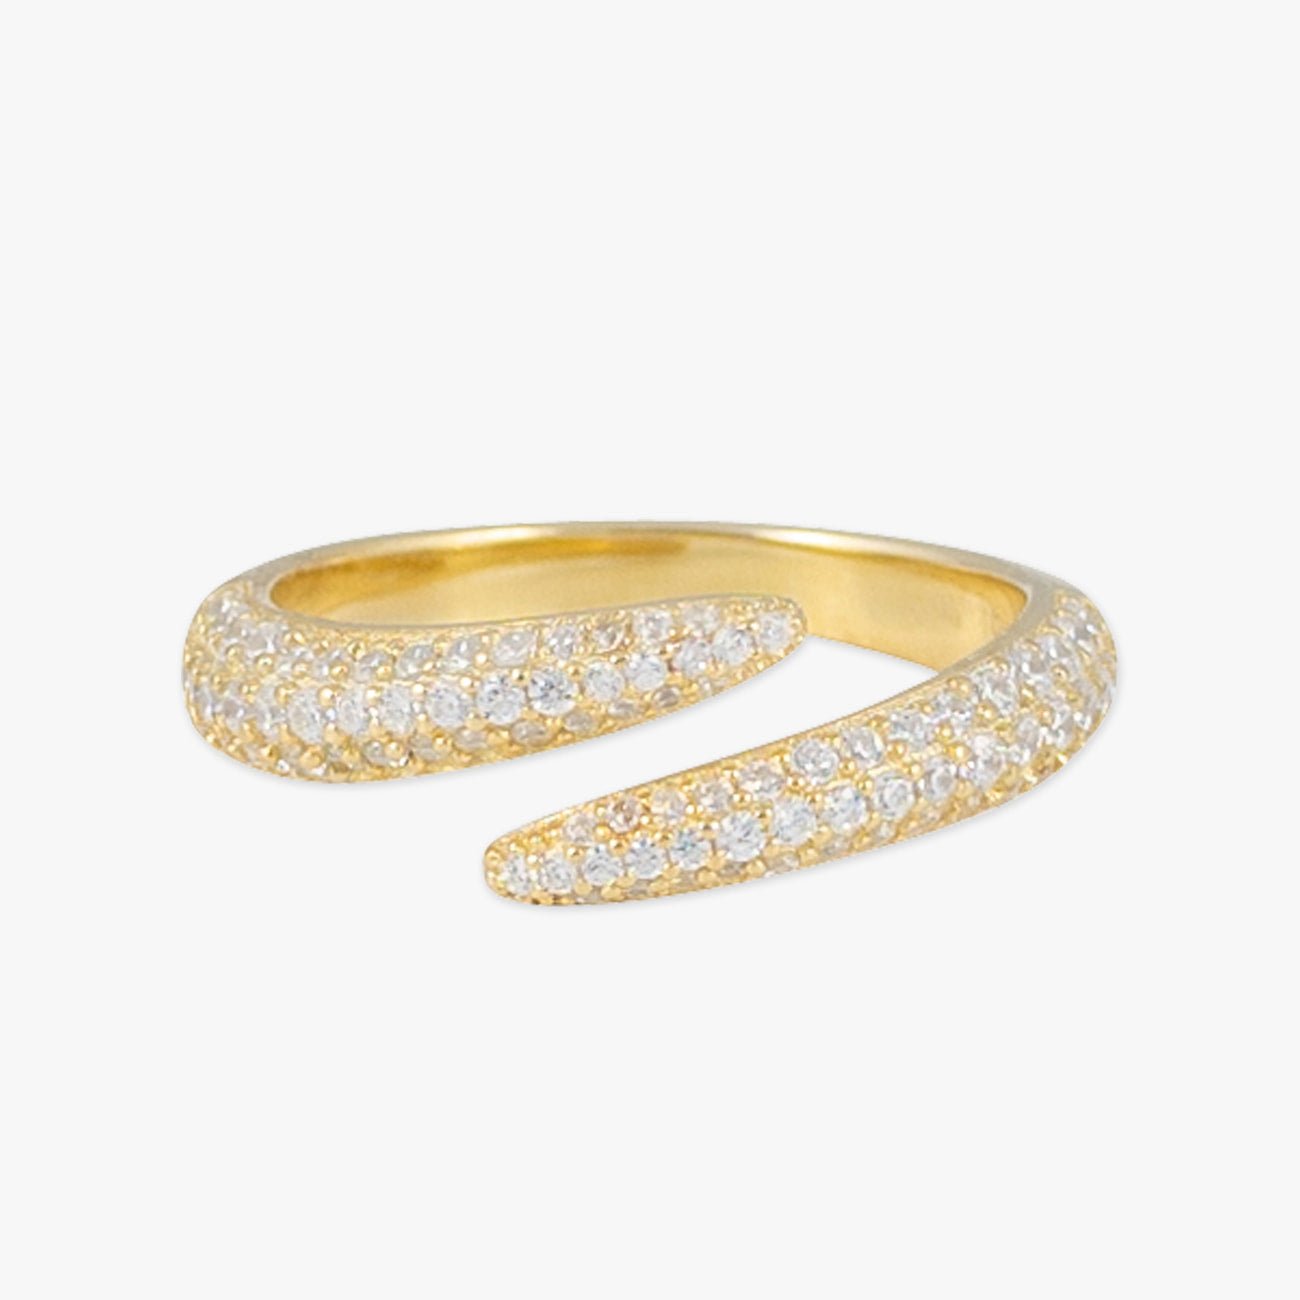 Luxurious Open Design Gold Ring with Zirconia Stones - Herzschmuck Schweiz